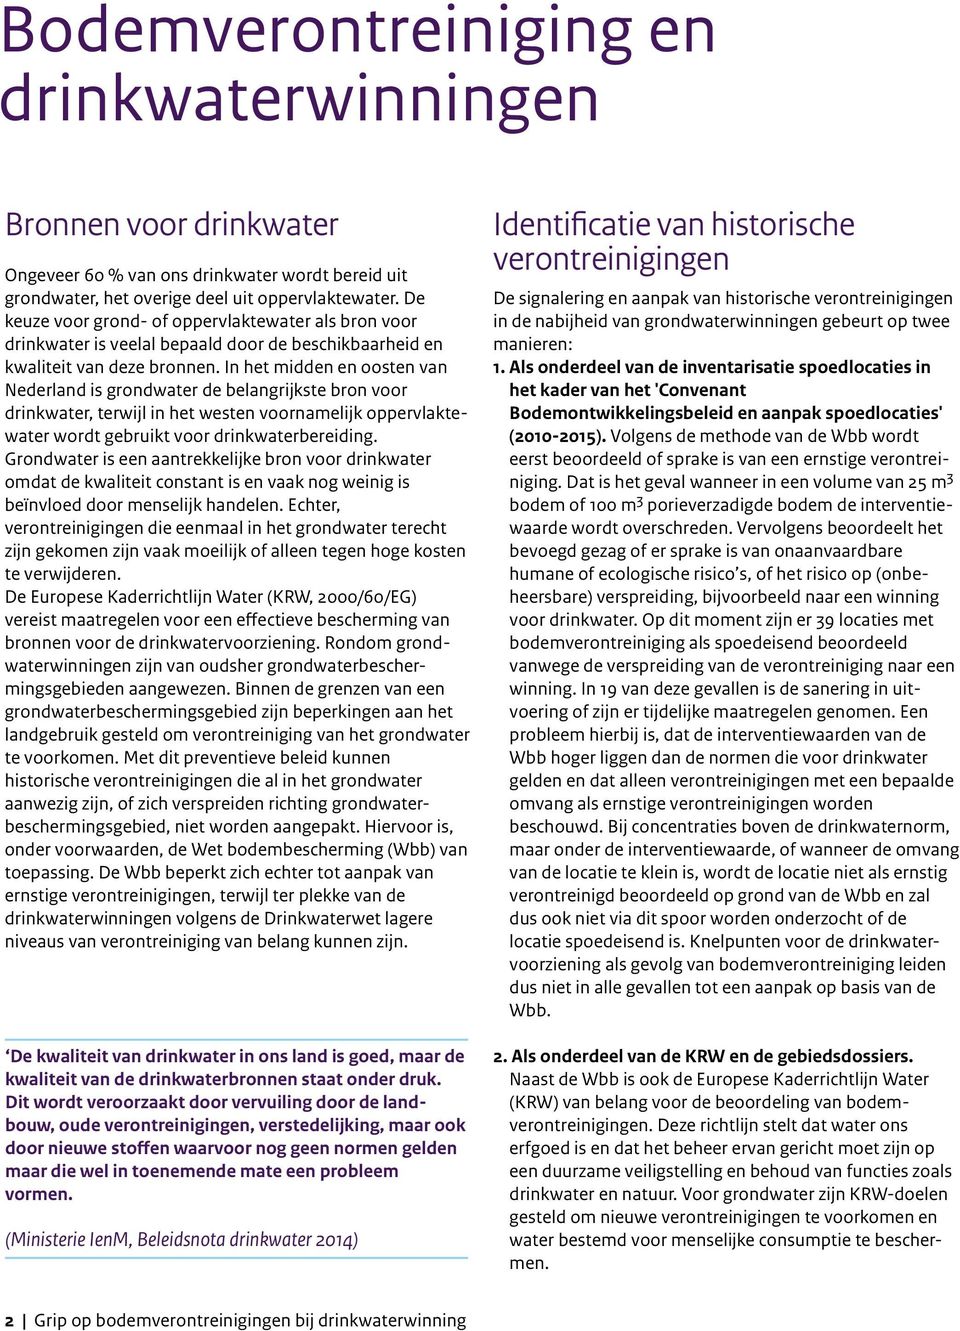 In het midden en oosten van Nederland is grondwater de belangrijkste bron voor drinkwater, terwijl in het westen voornamelijk oppervlaktewater wordt gebruikt voor drinkwaterbereiding.